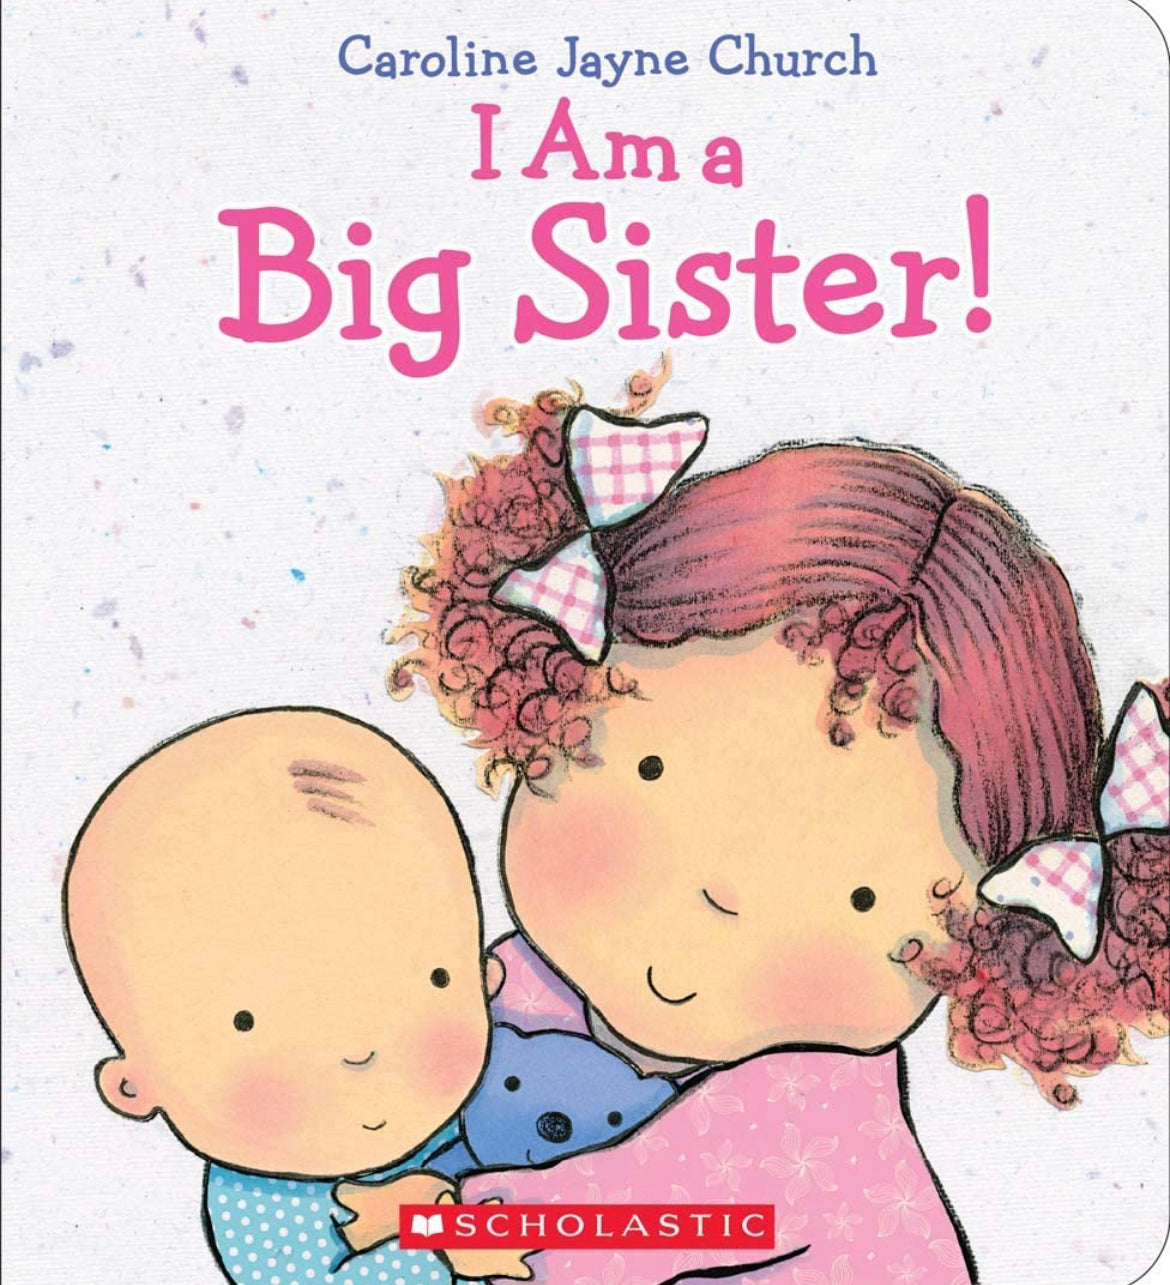 I Am a Big Sister (Caroline Jayne Church).